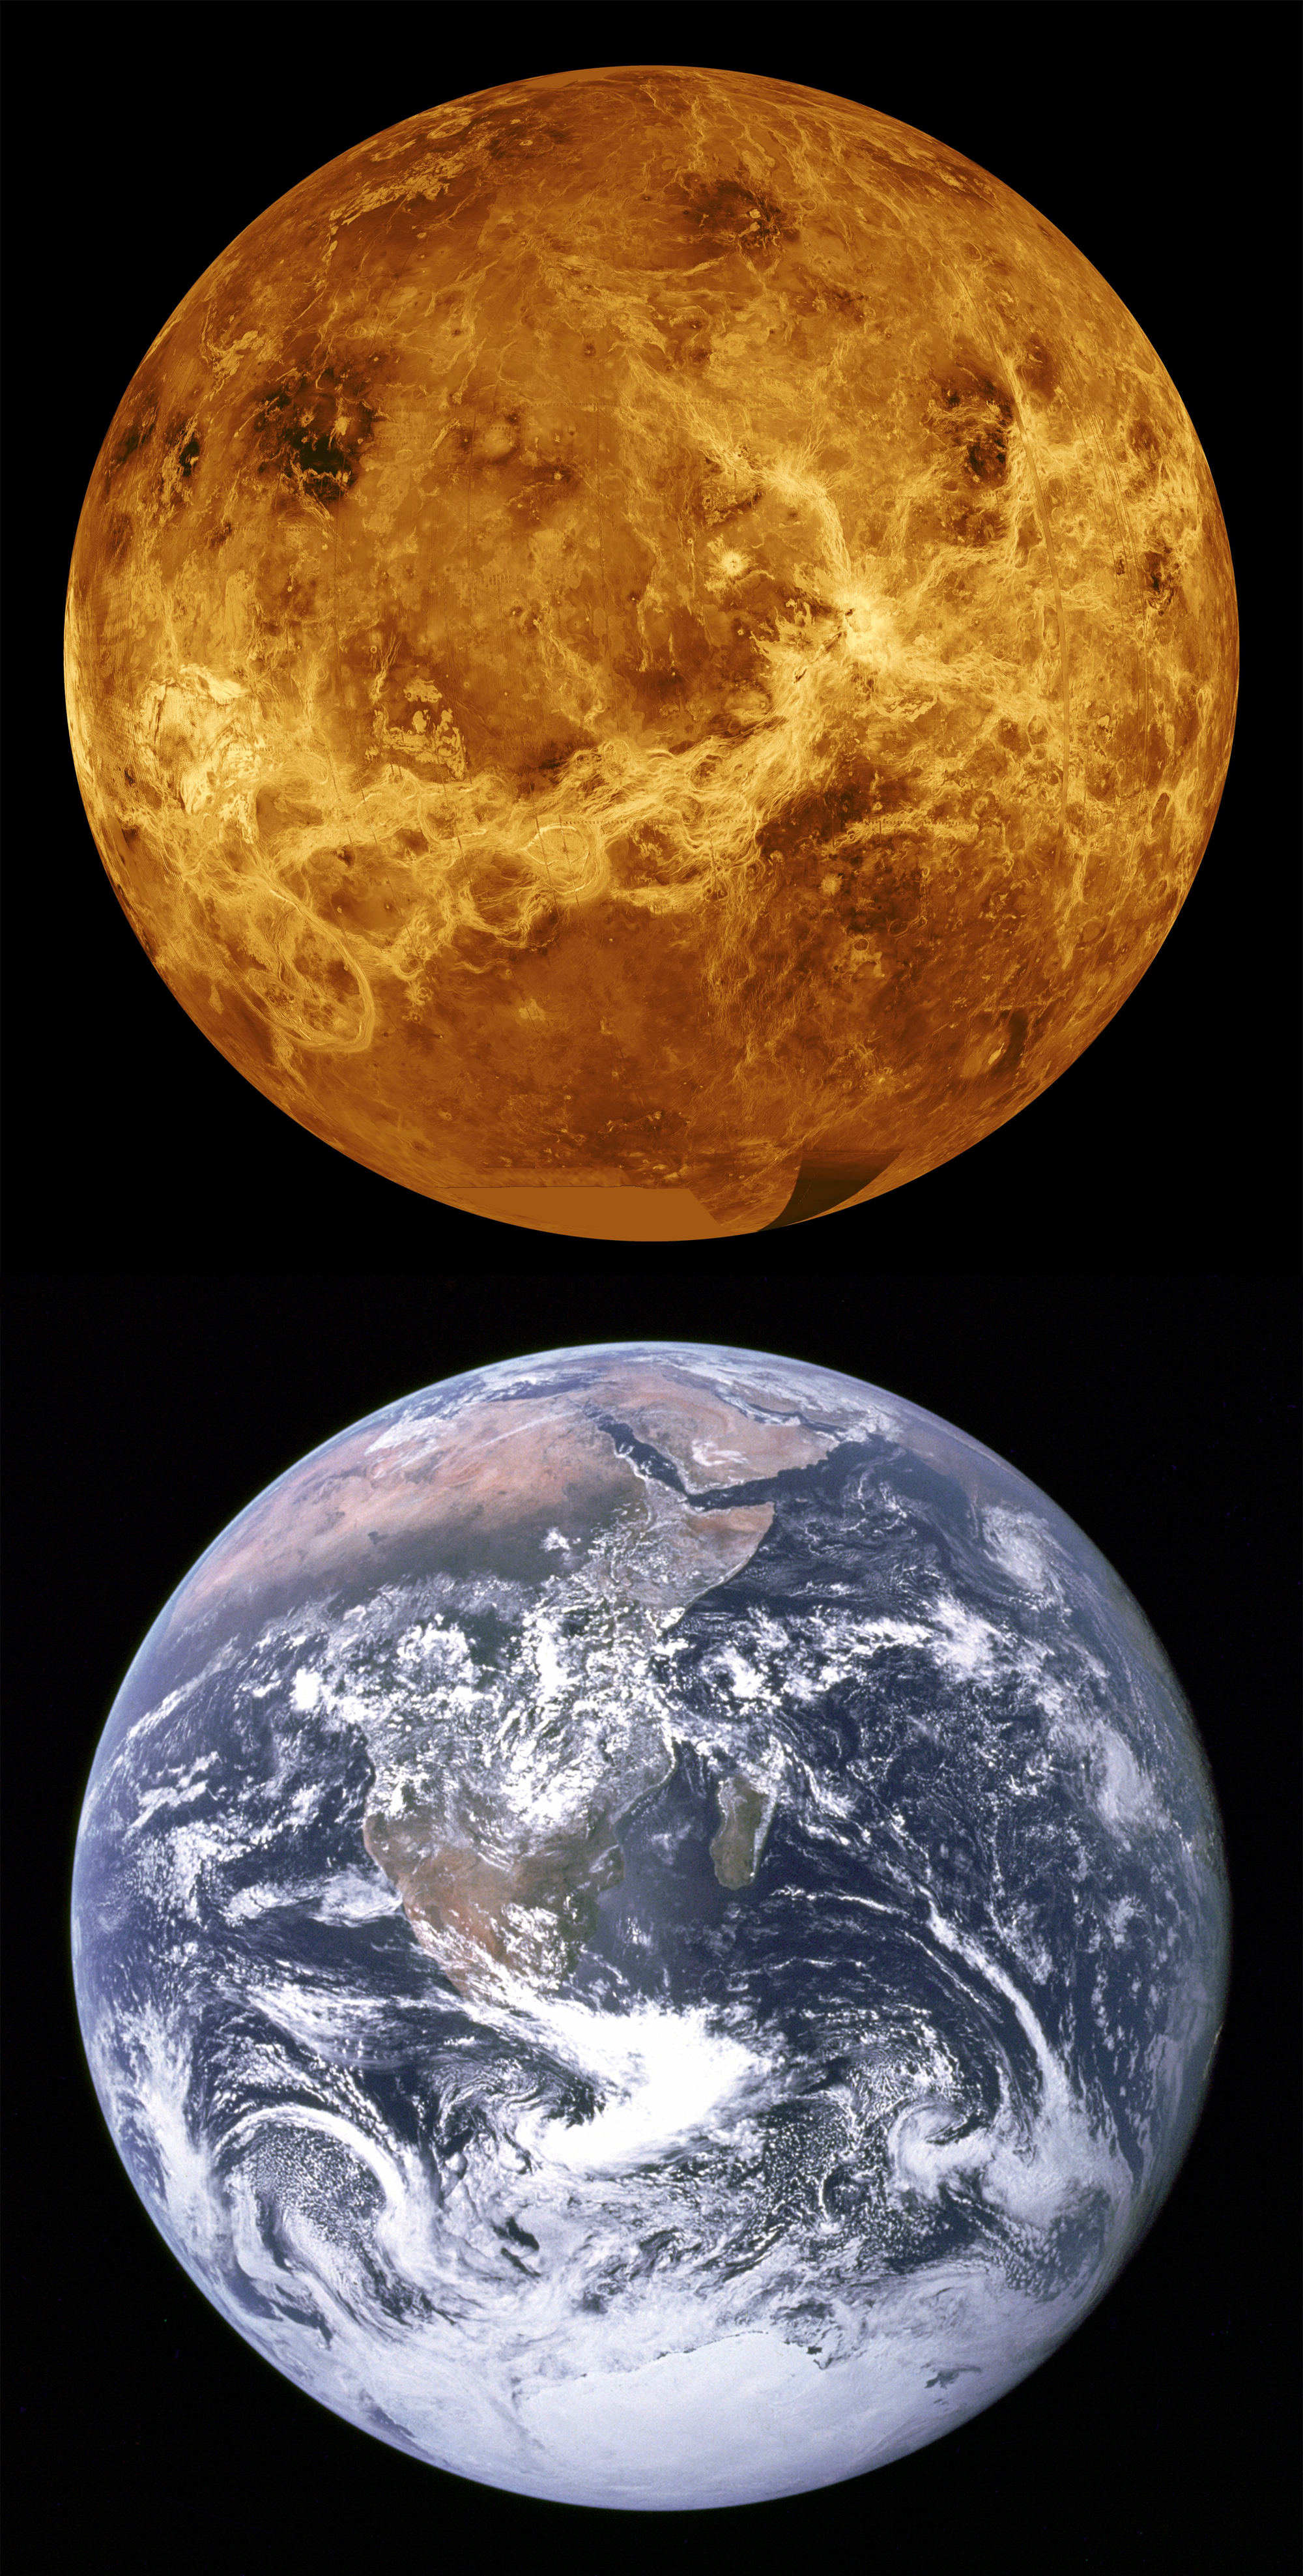 Earth Venus Comparison